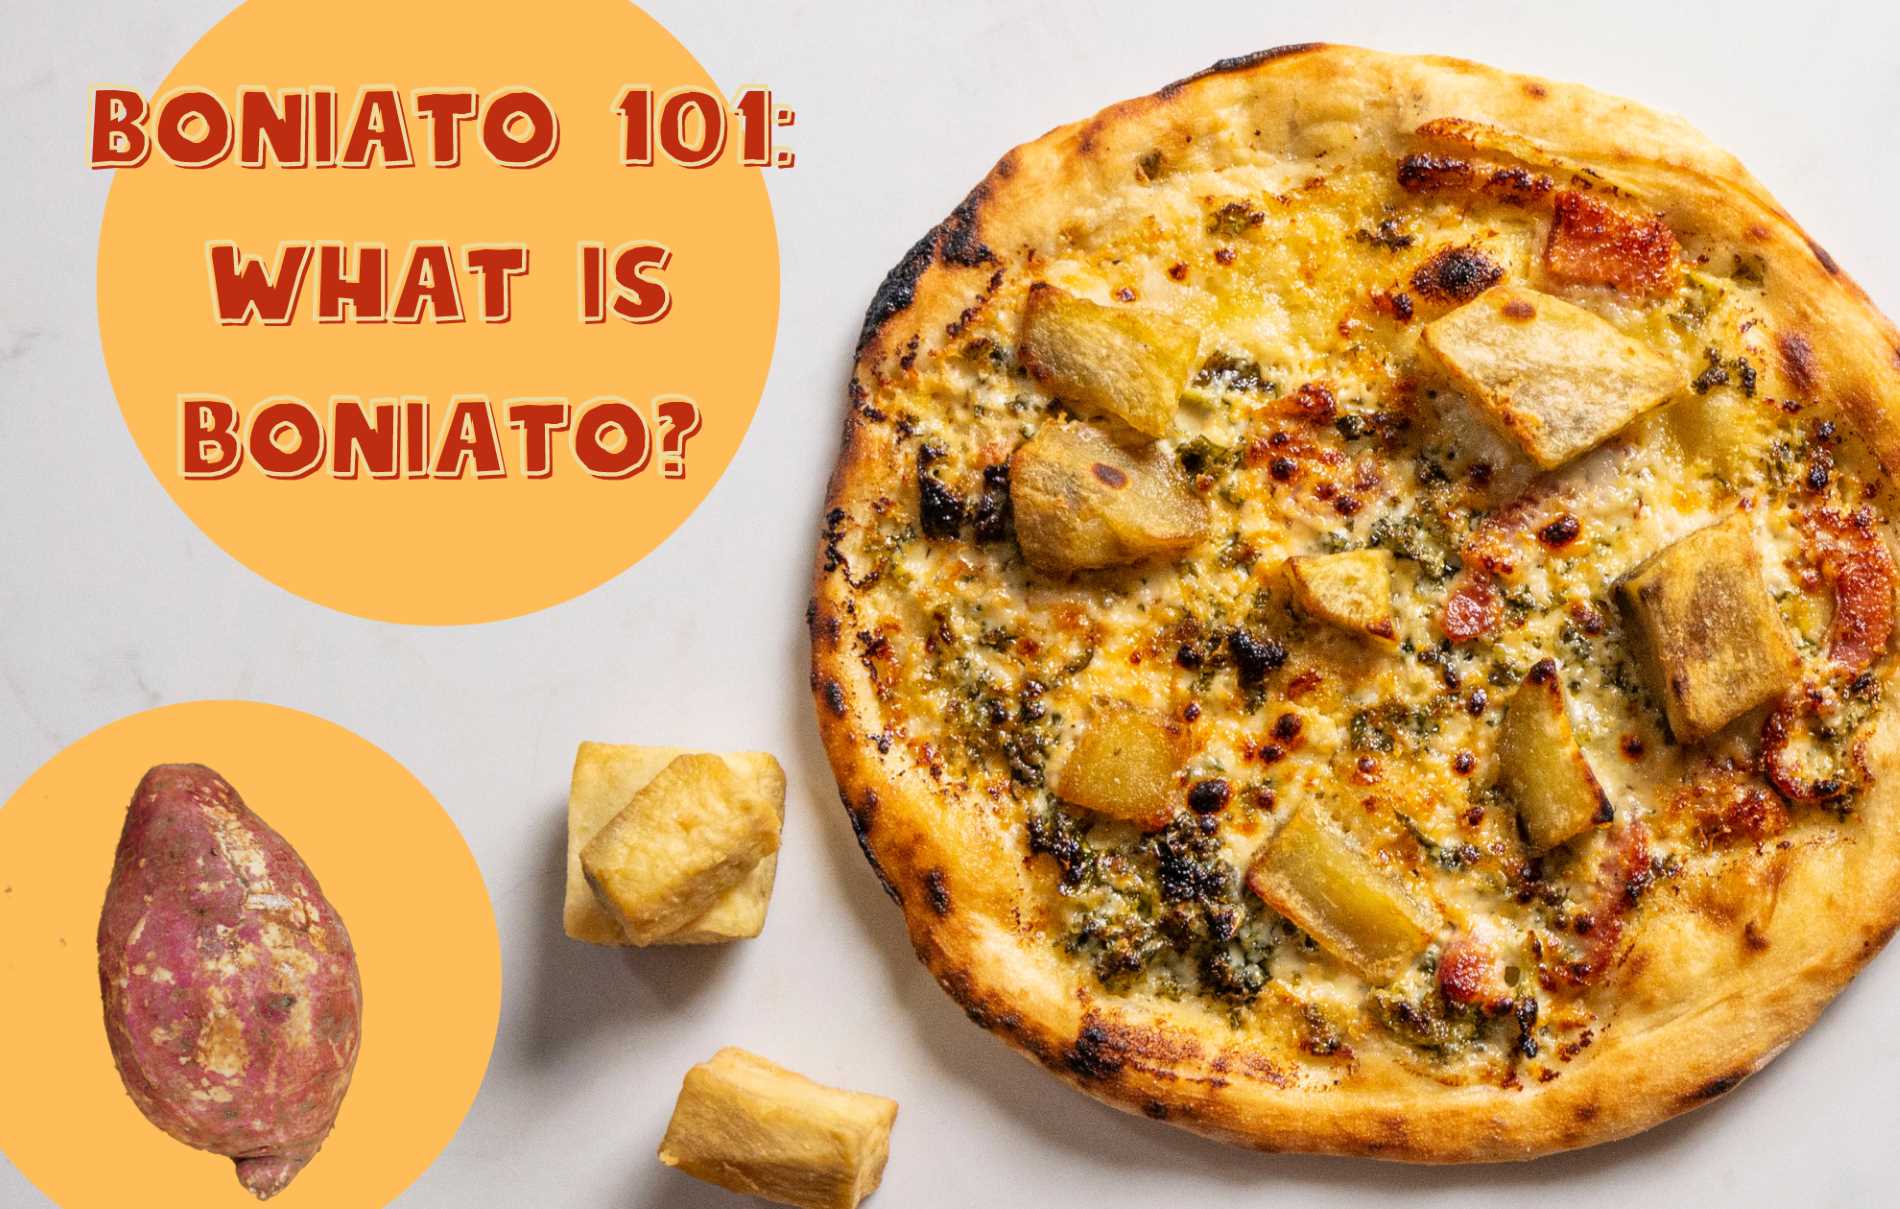 Boniato 101: What is Boniato?